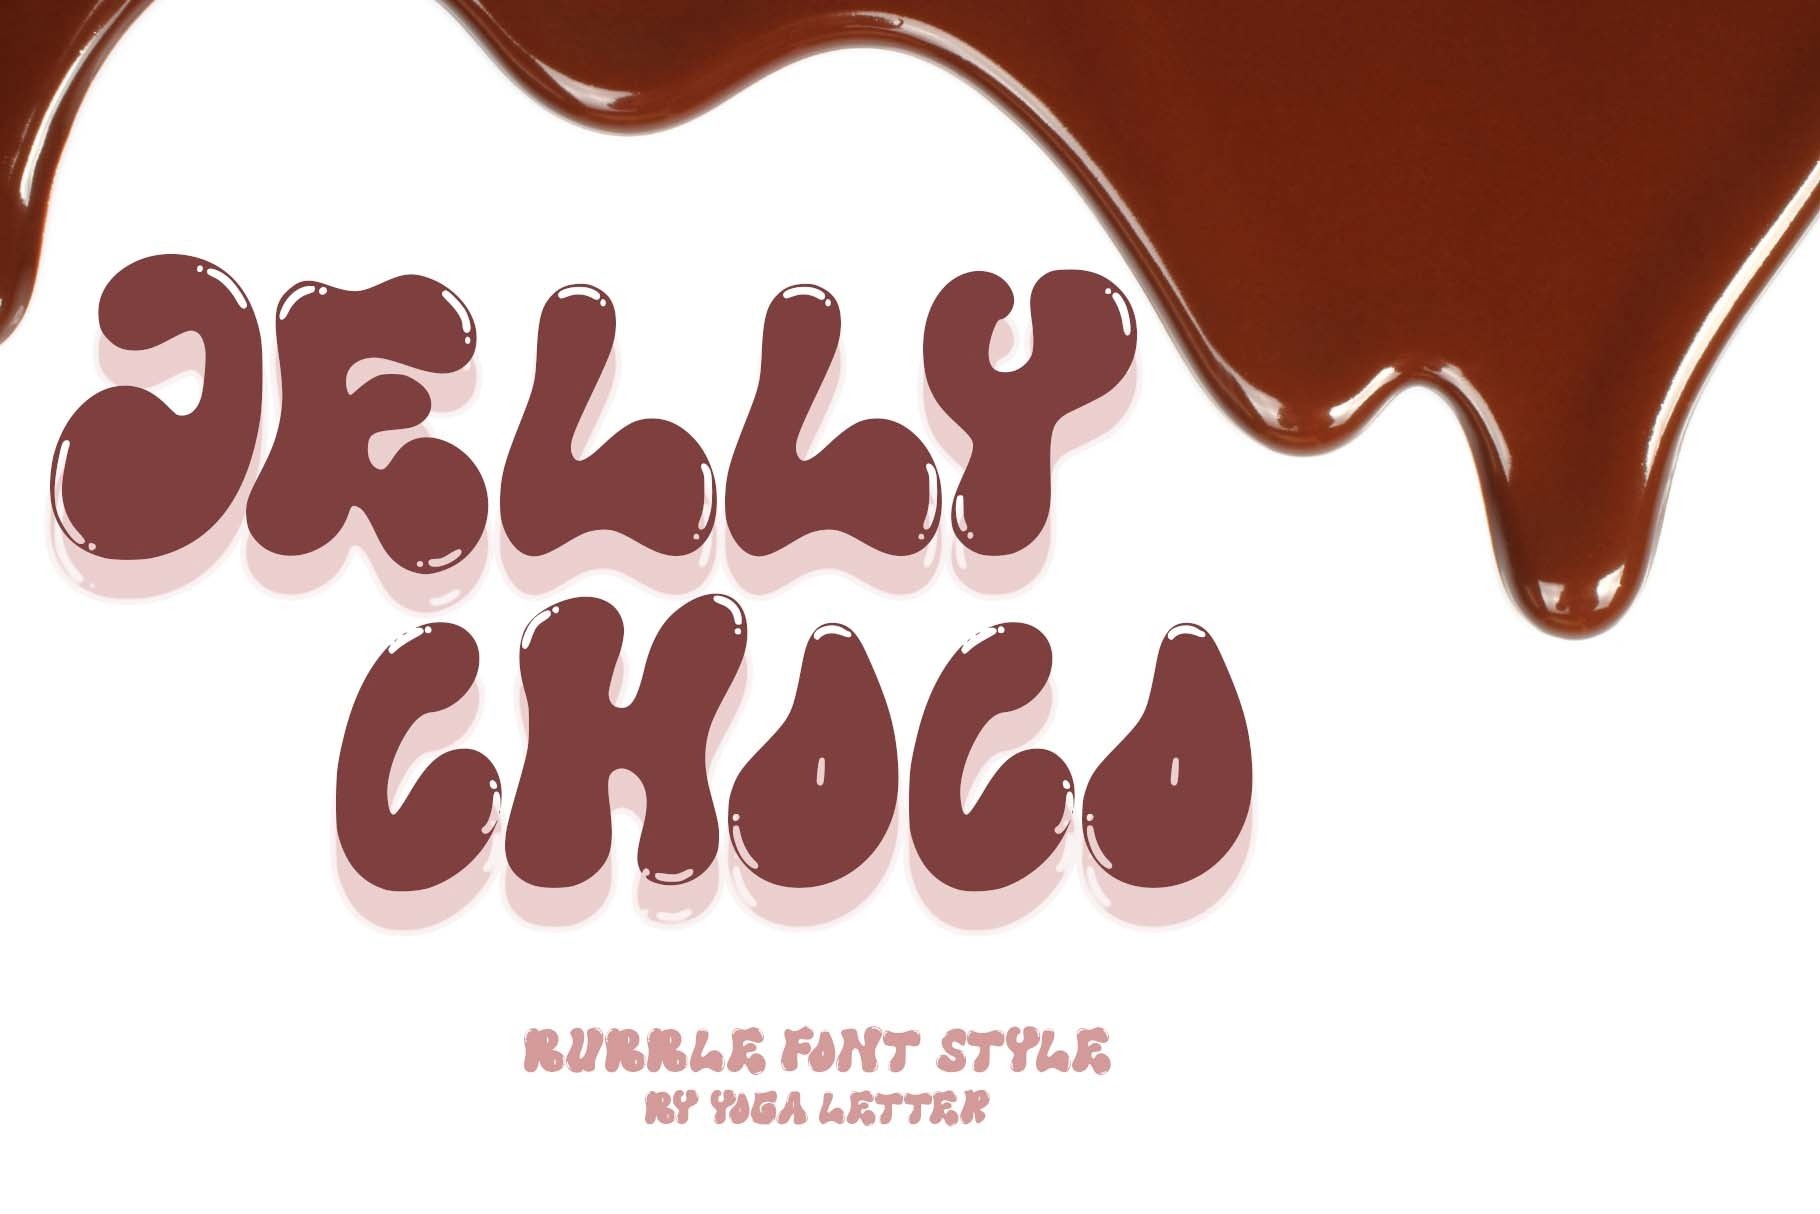 Beispiel einer Jelly Choco-Schriftart